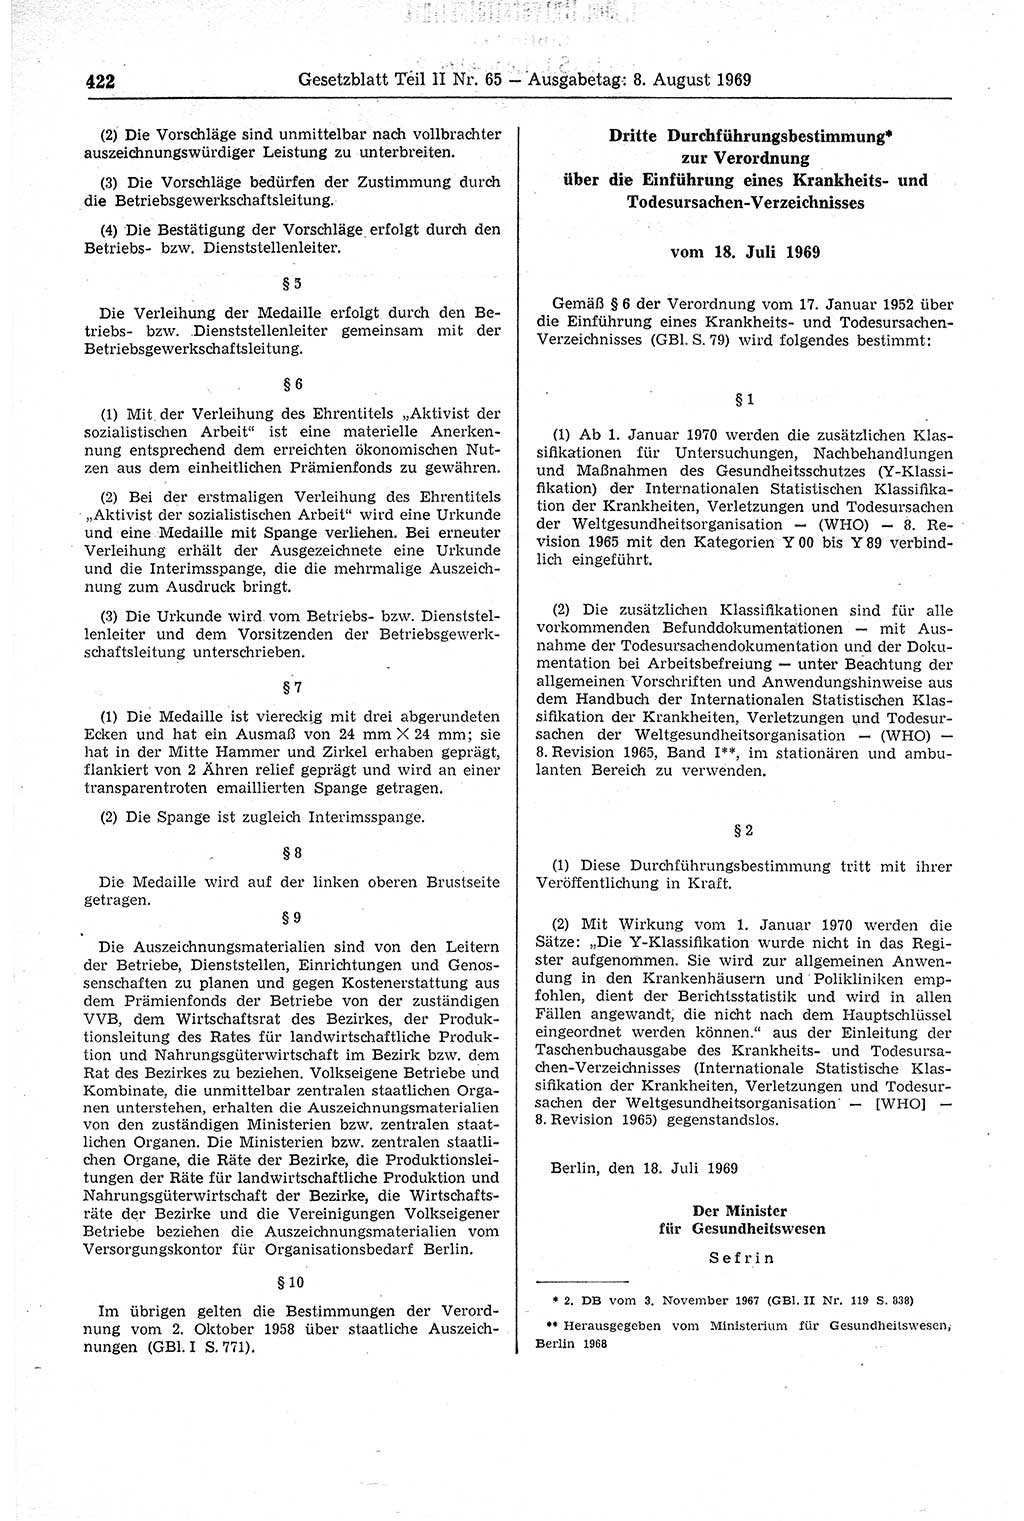 Gesetzblatt (GBl.) der Deutschen Demokratischen Republik (DDR) Teil ⅠⅠ 1969, Seite 422 (GBl. DDR ⅠⅠ 1969, S. 422)